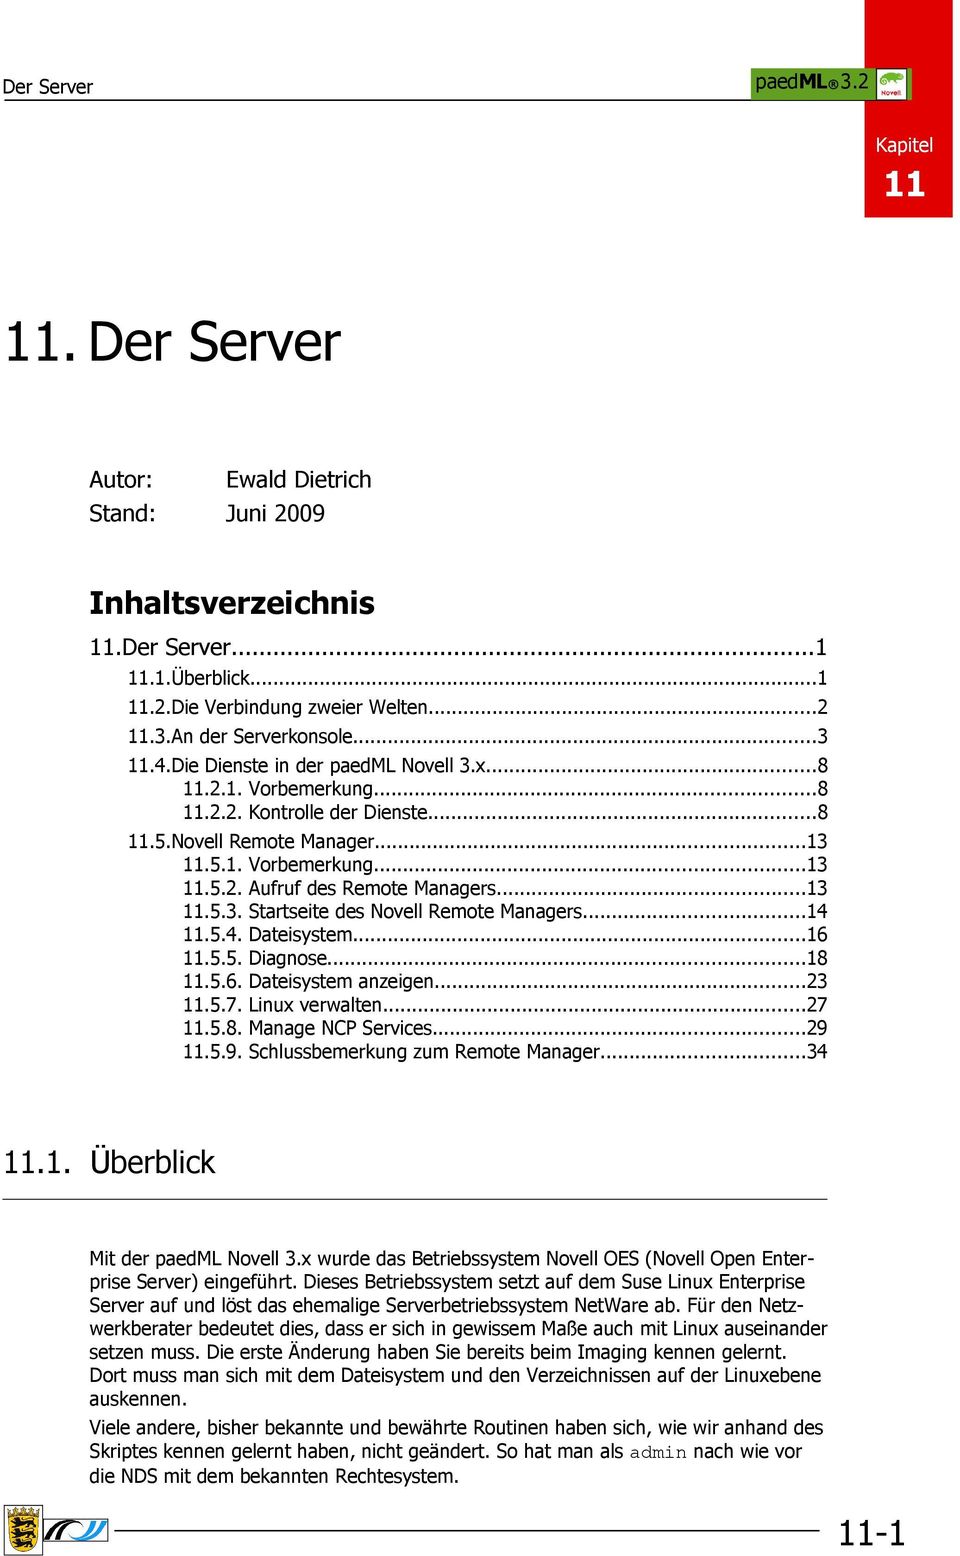 ..14 11.5.4. Dateisystem...16 11.5.5. Diagnose...18 11.5.6. Dateisystem anzeigen...23 11.5.7. Linux verwalten...27 11.5.8. Manage NCP Services...29 11.5.9. Schlussbemerkung zum Remote Manager...34 11.